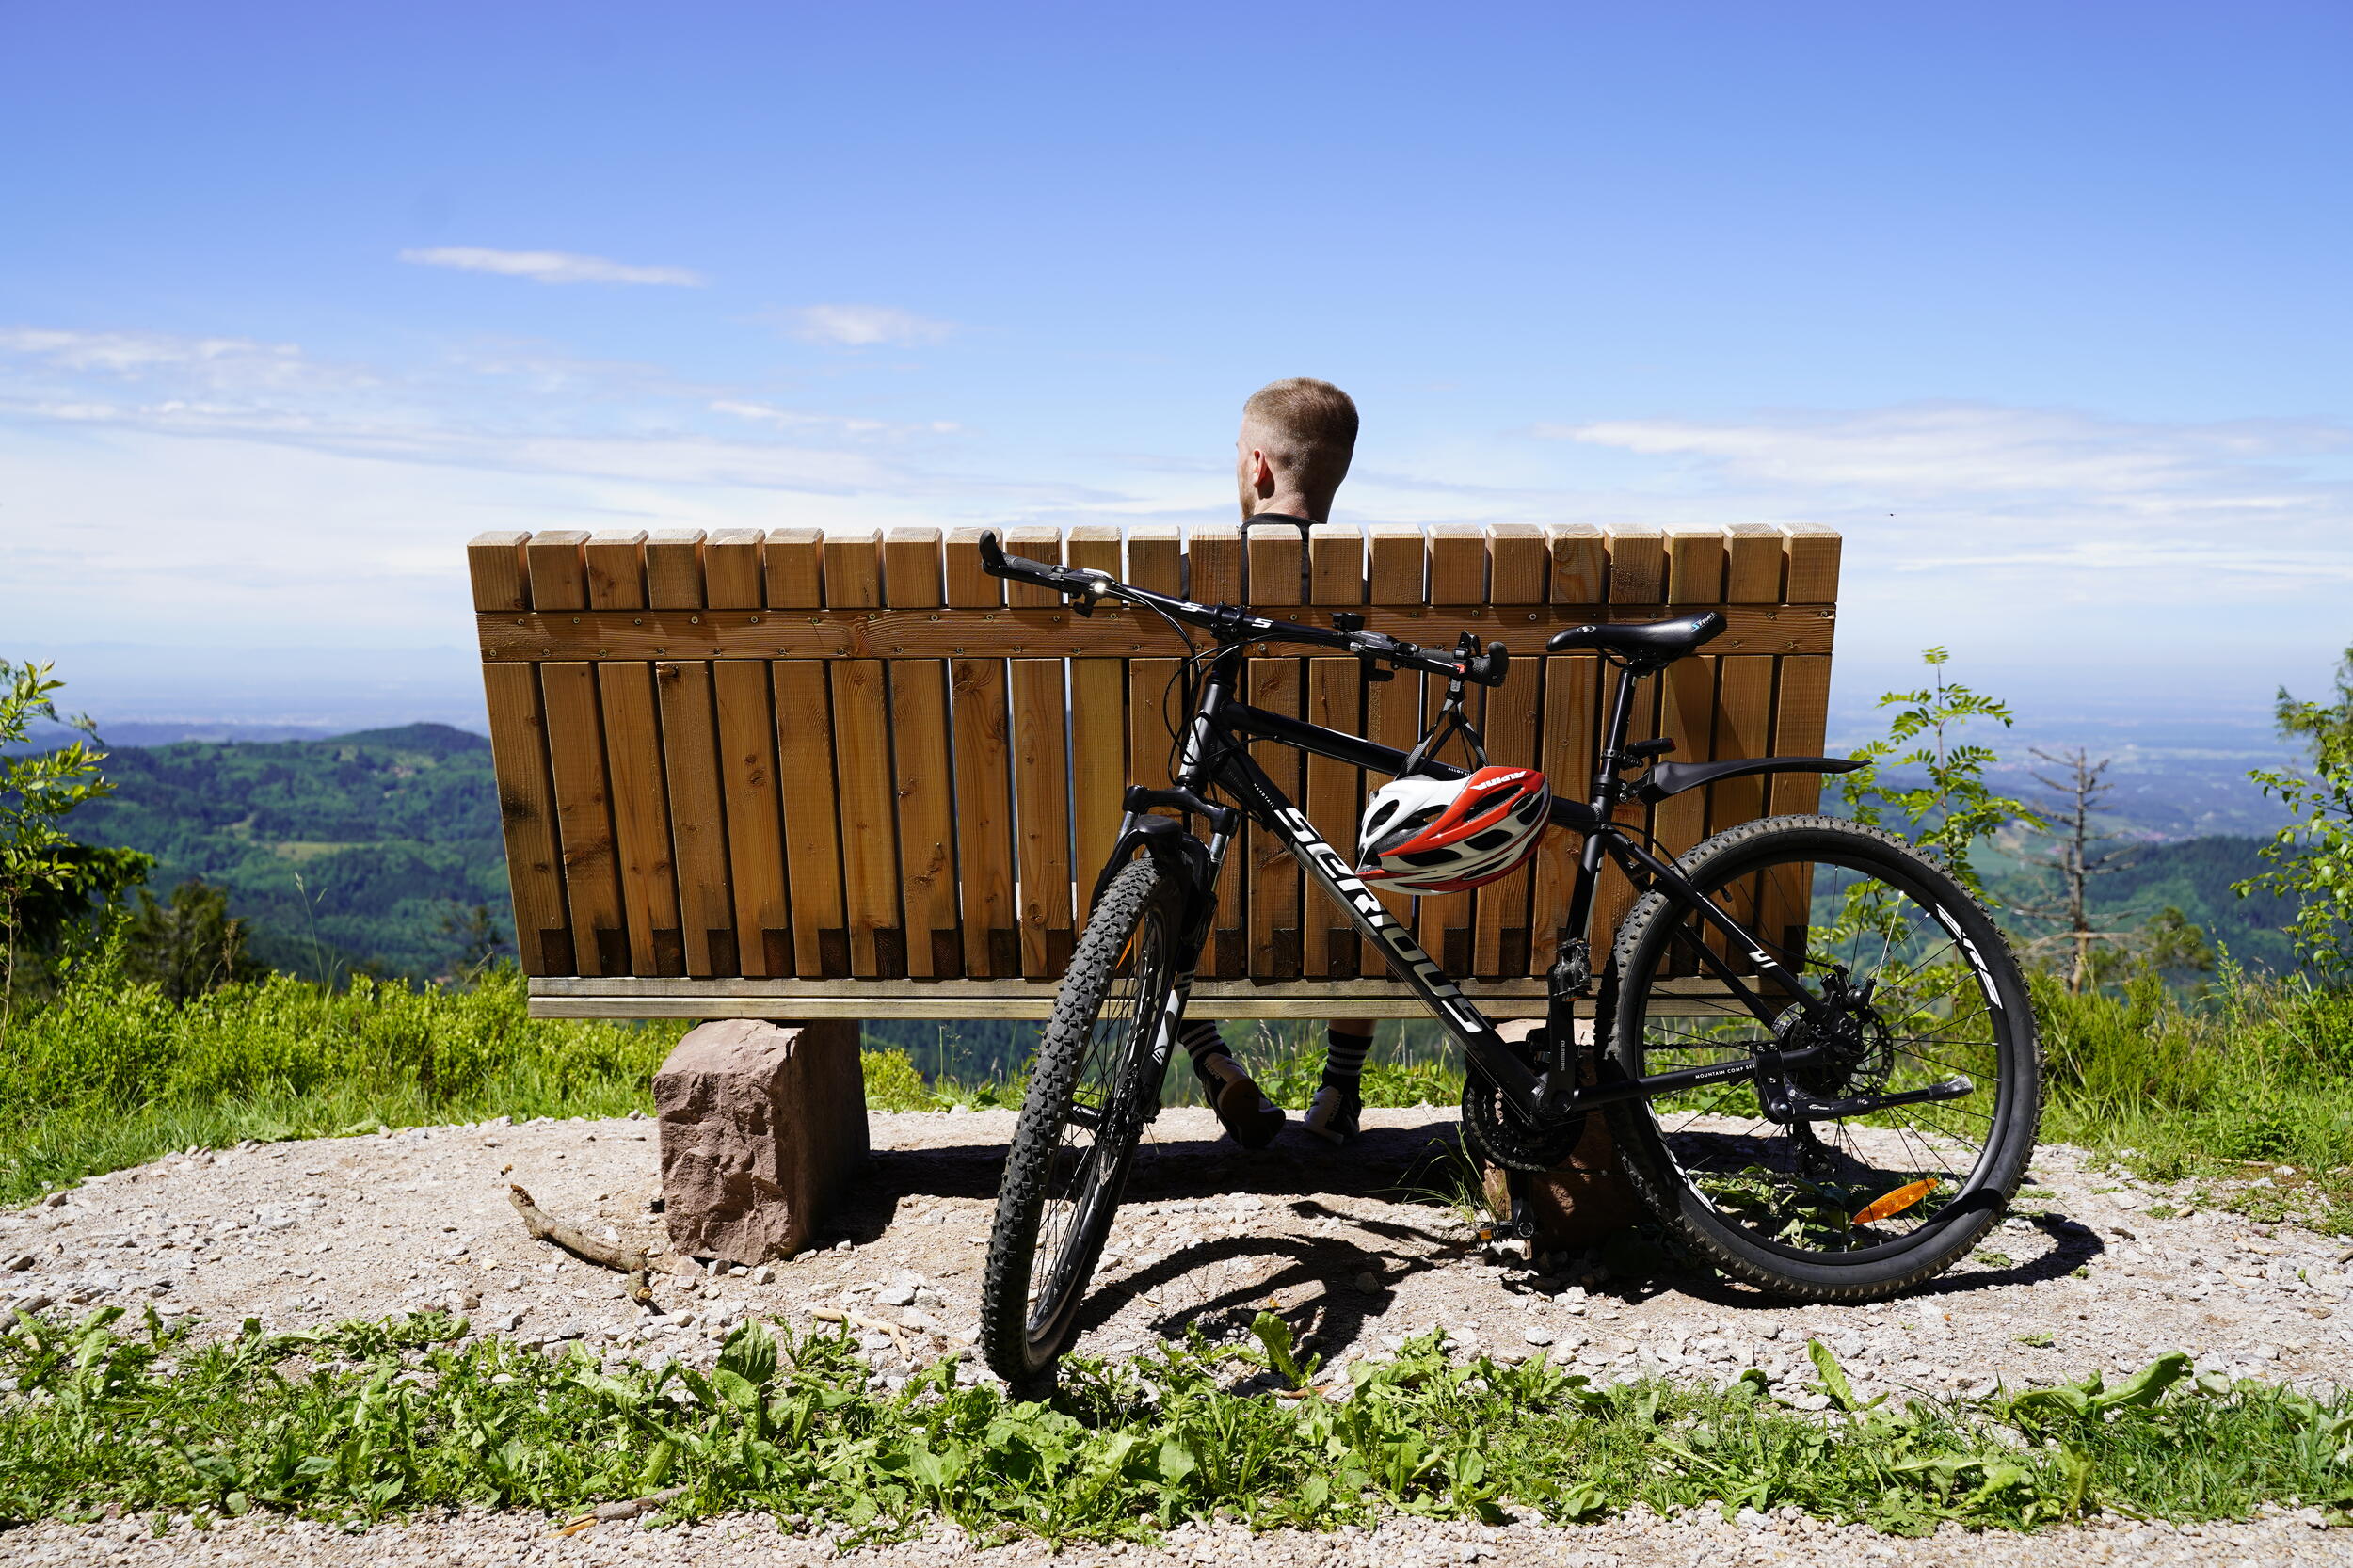 Ein Mountainbike lehnt an einer Holzbank, die von hinten zu sehen ist. Auf der Bank sitzt eine Person mit kurzen Haaren, nur der Hinterkopf ist sichtbar, die ins Tal schaut.